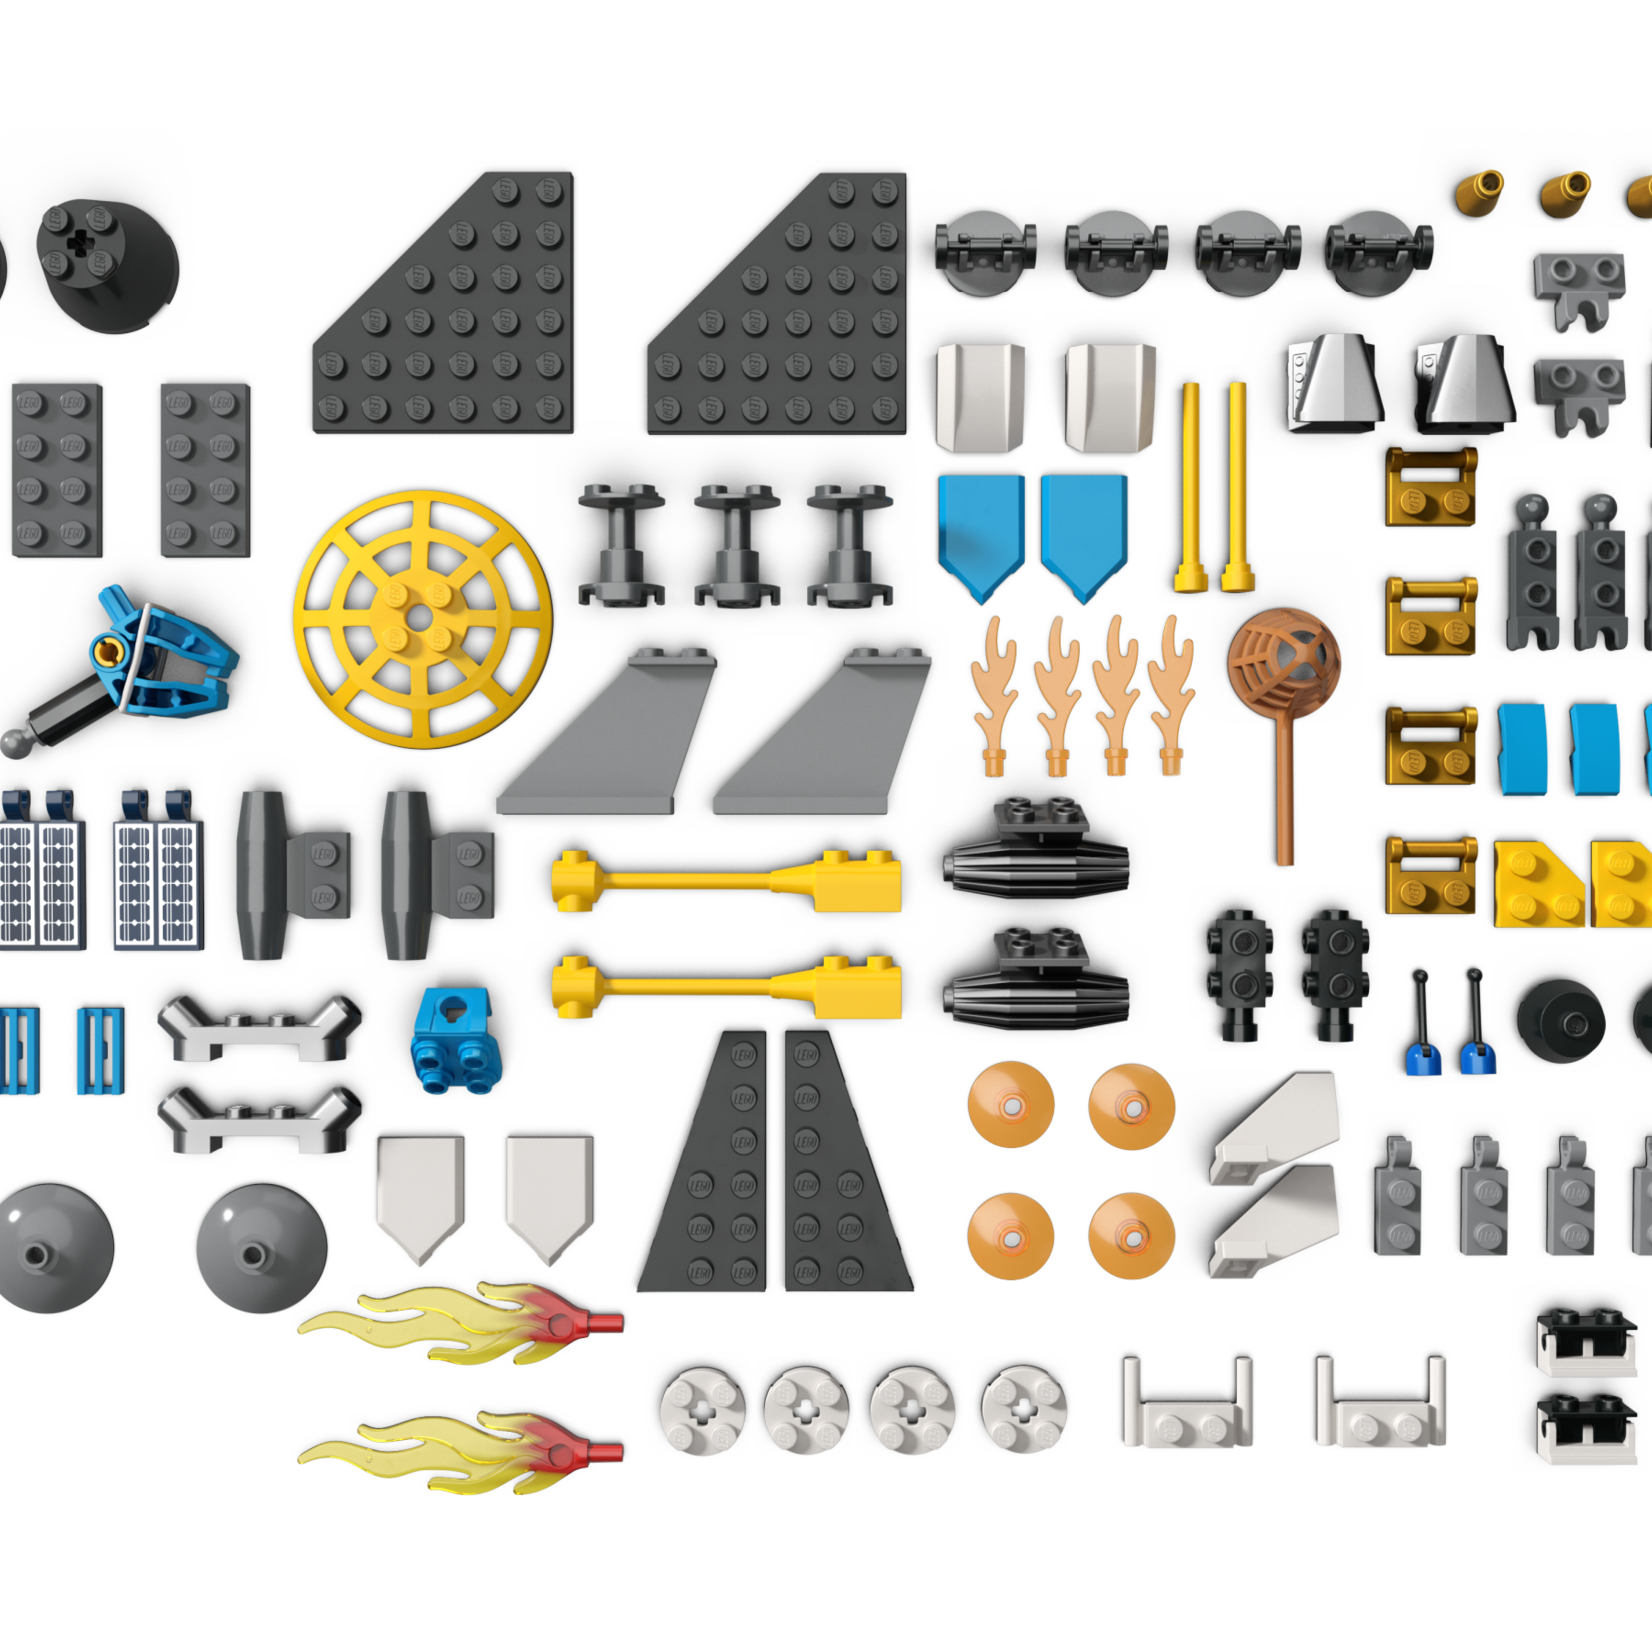 Lego *****Lego 60354 City - Les missions d’exploration spatiale sur Mars